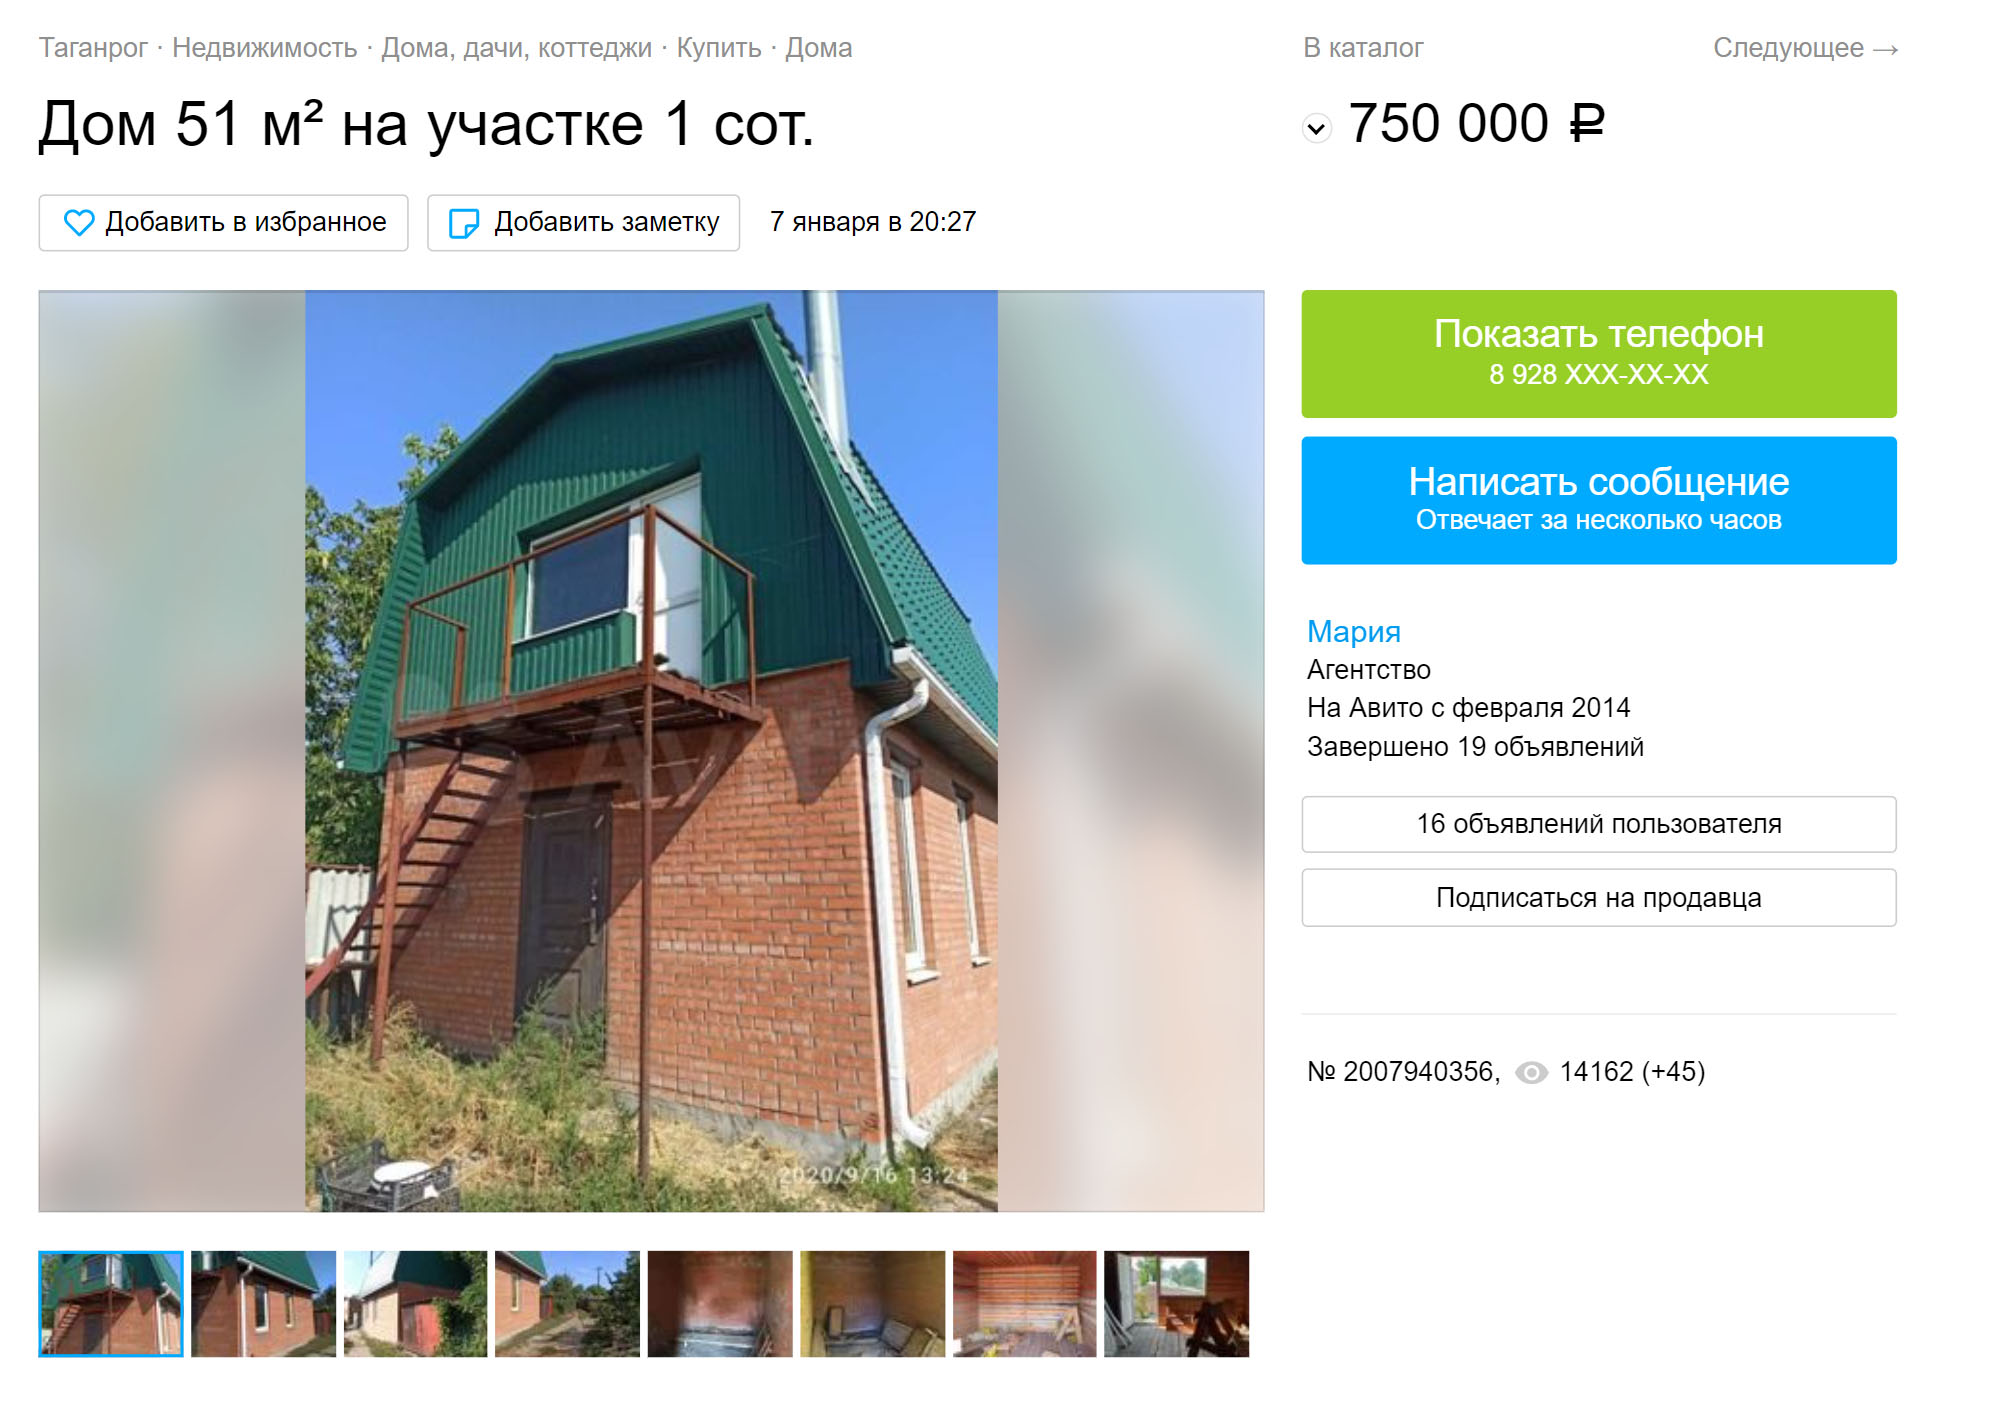 Этот двухэтажный дом в центре города продают за 750 тысяч рублей. Цена занижена из-за того, что по документам это нежилое строение